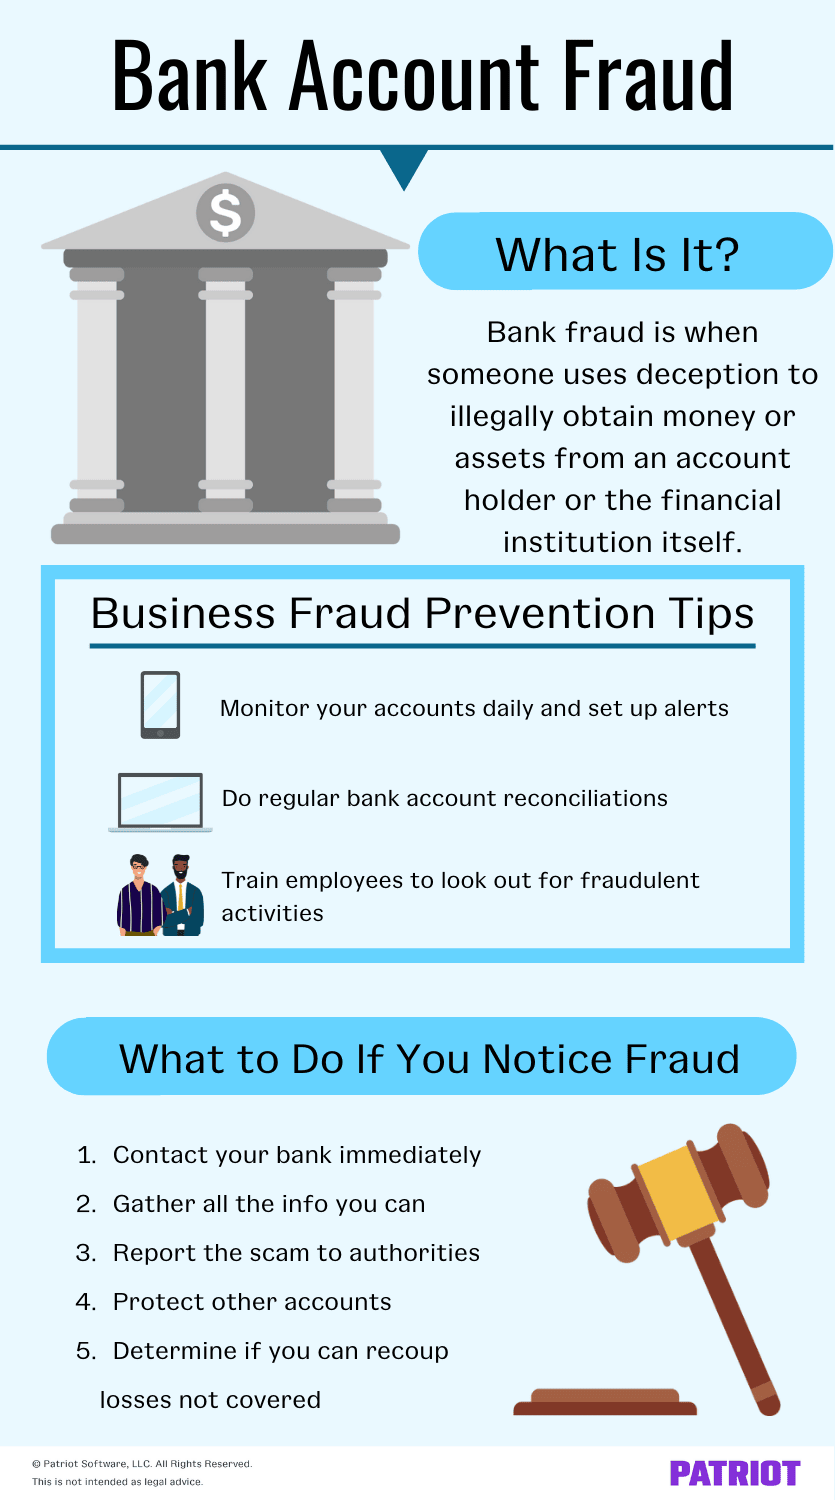 银行账户欺诈:它是什么，预防建议，以及如果你发现欺诈应该怎么做